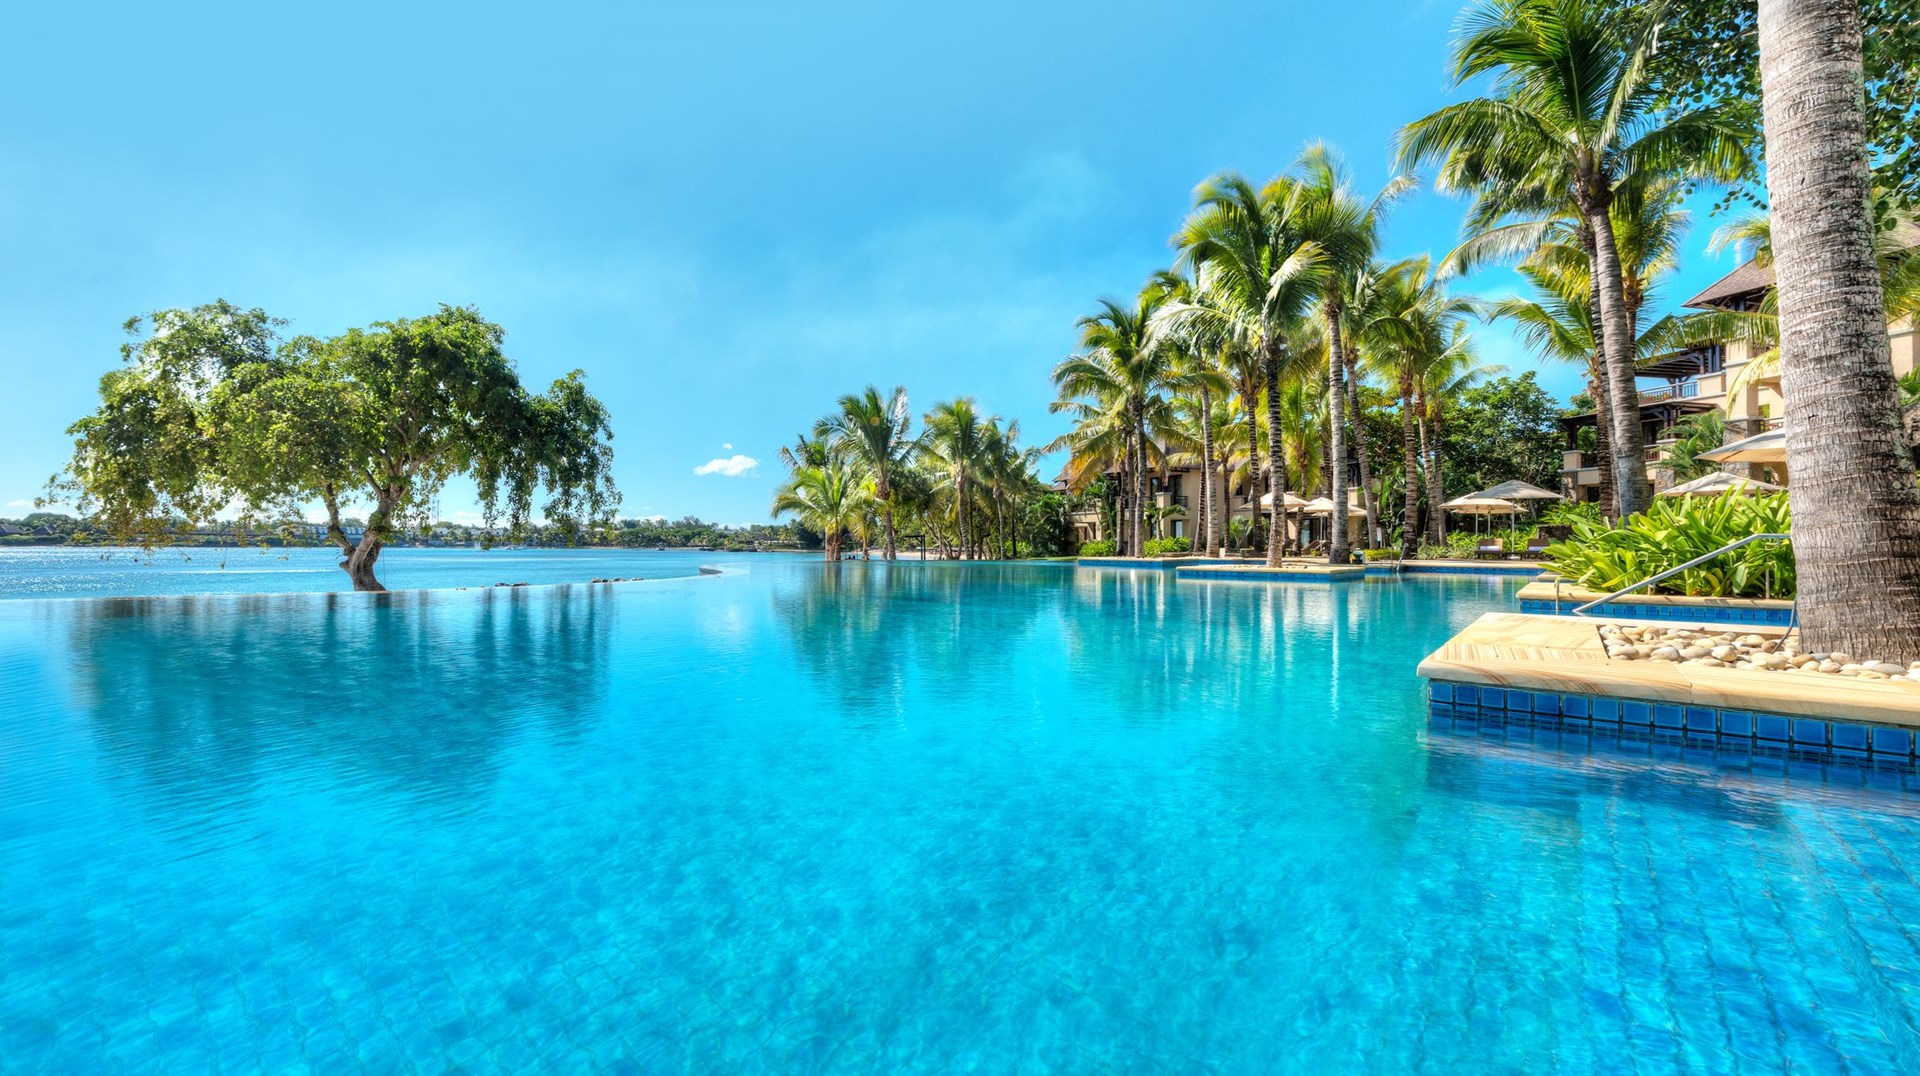 Buitengewone uitzichten, luxe en uitstekende service The Westin Turtle Bay Resort & Spa